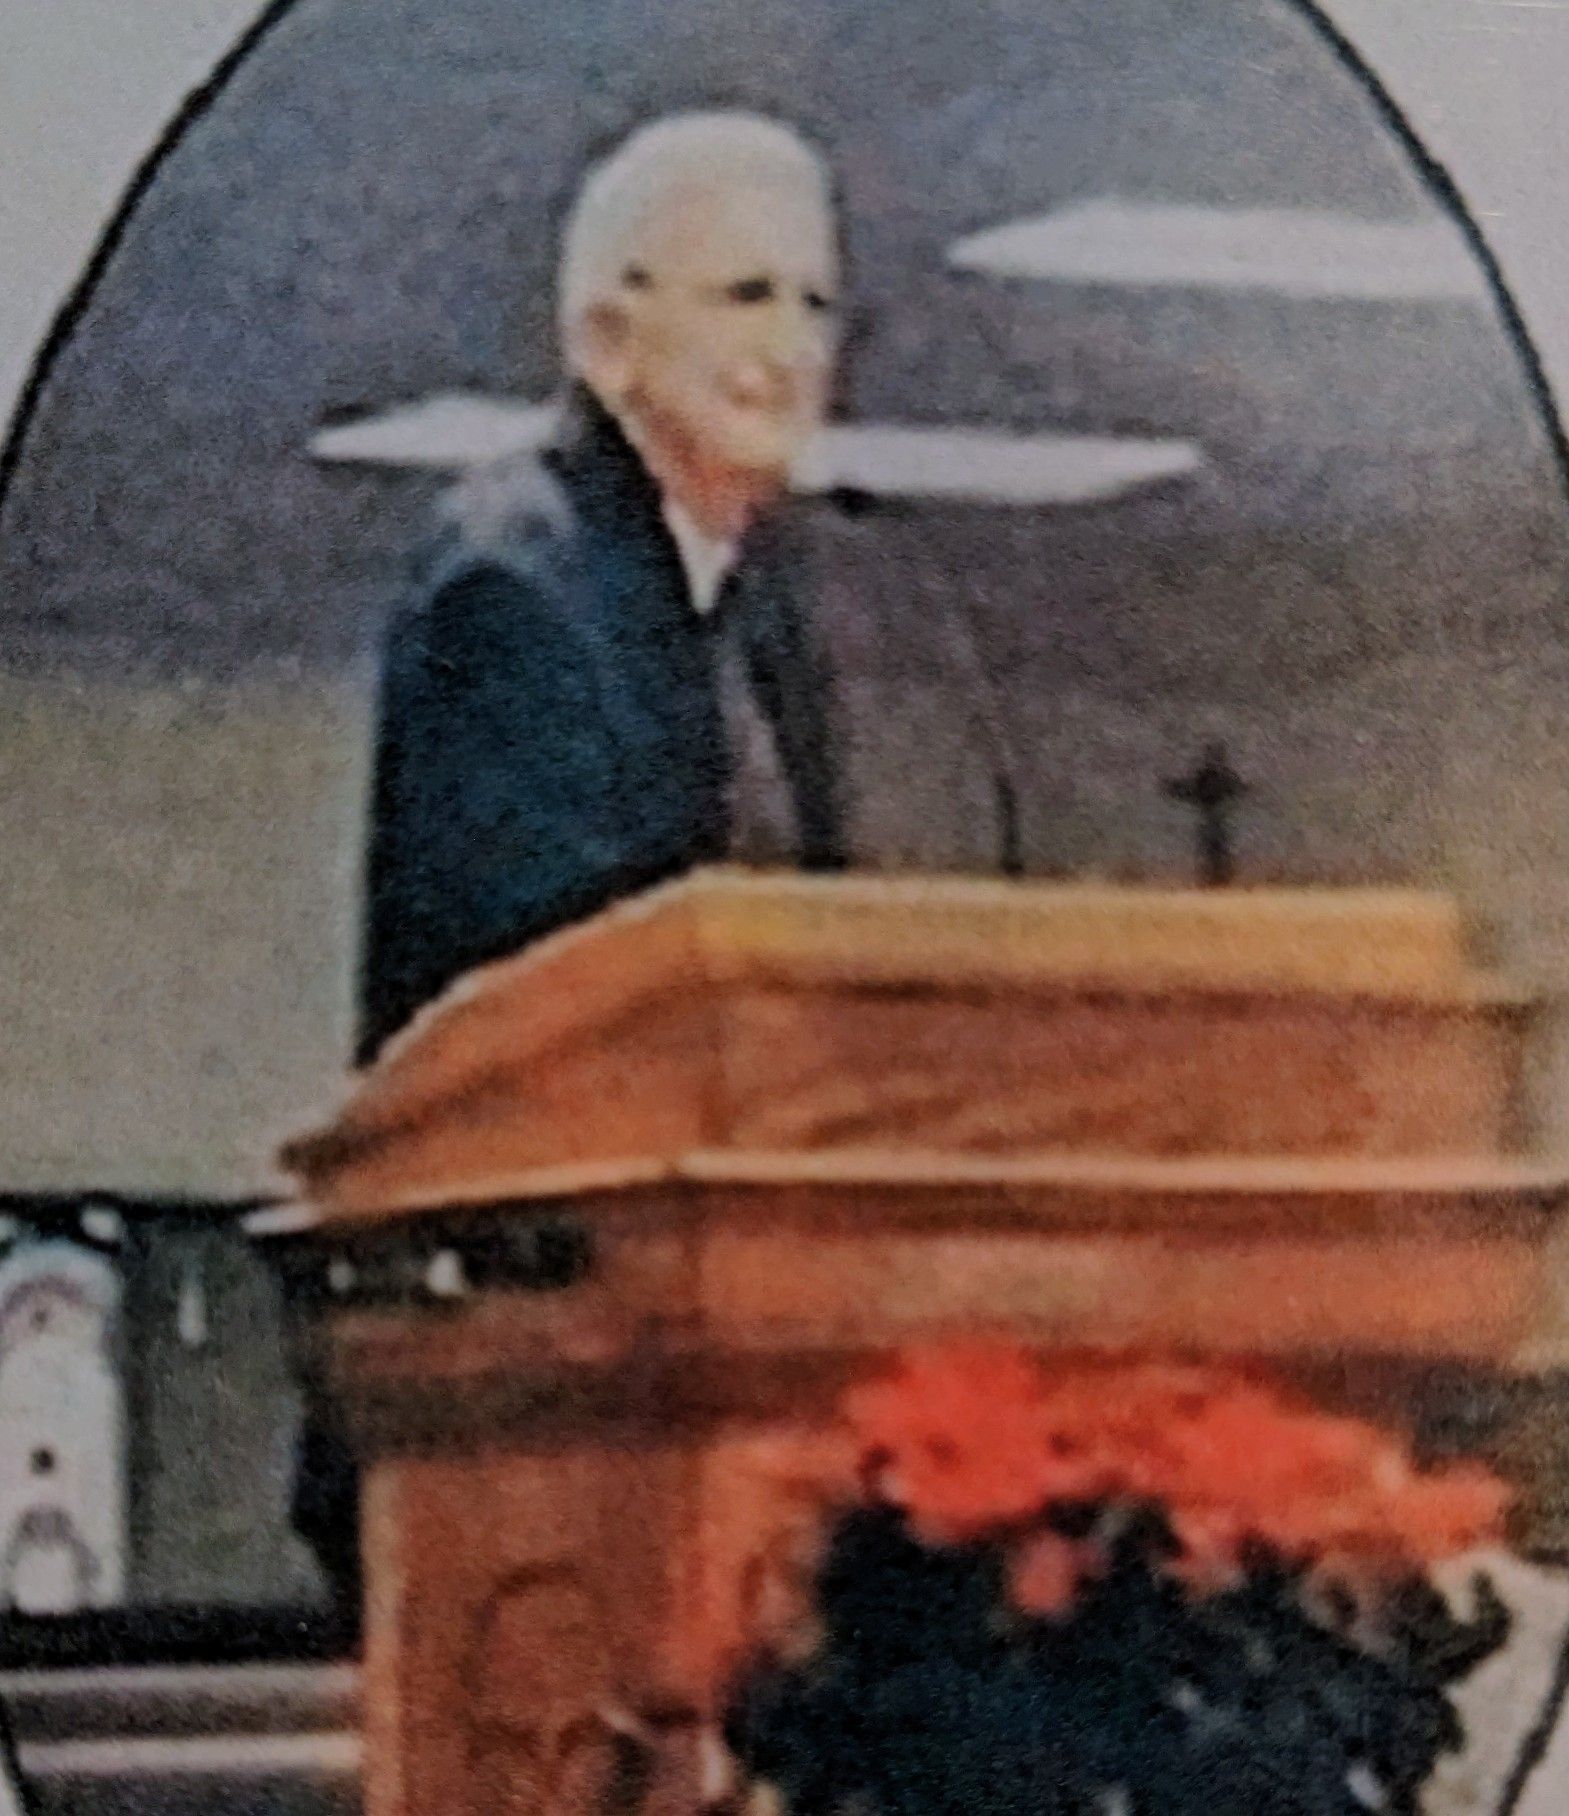 Rev. Bill Bauguess